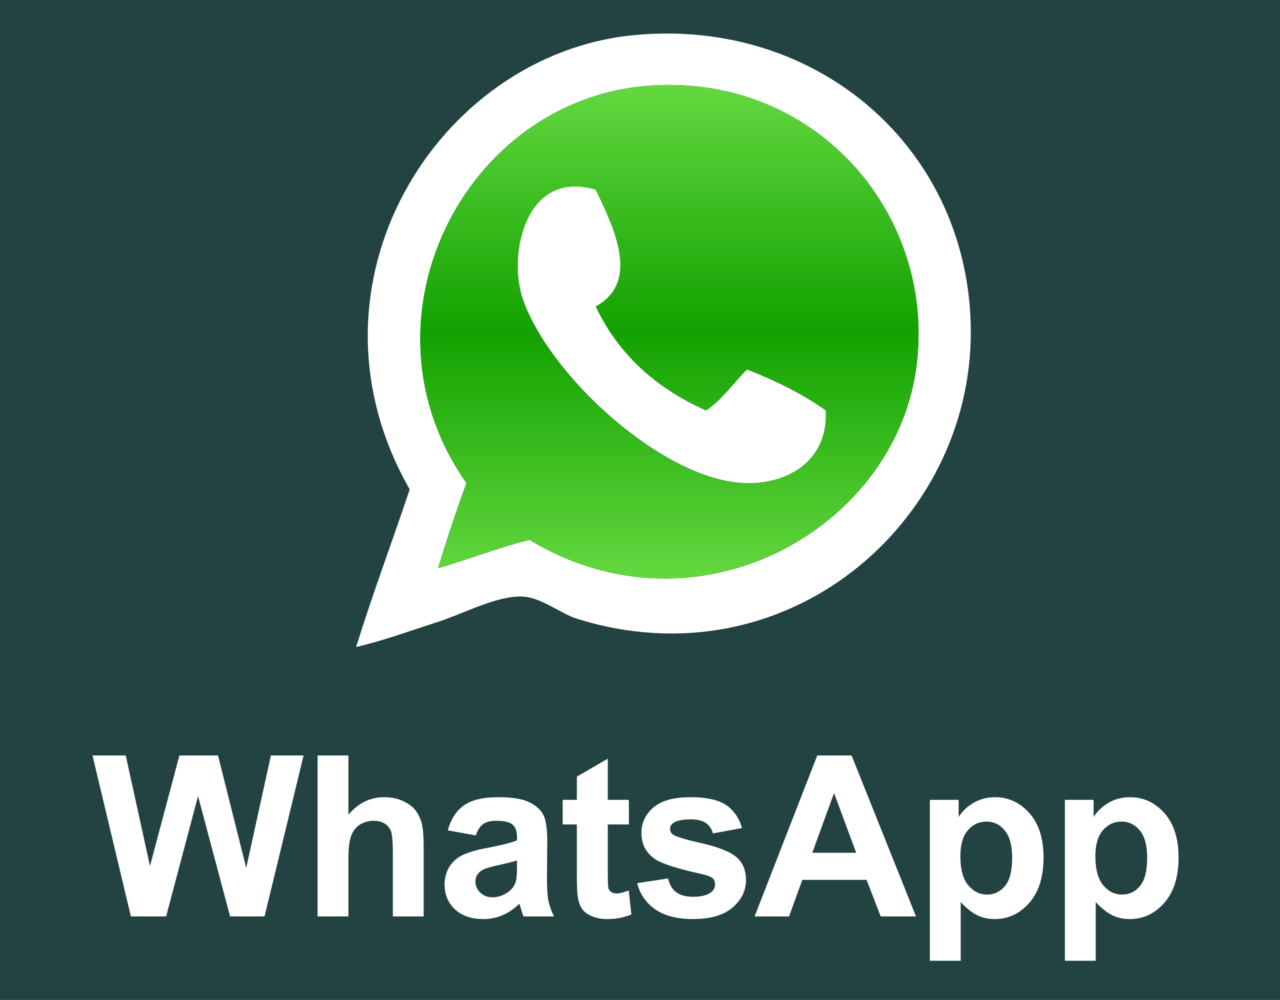 Reclame Aqui: agora é possível enviar reclamações por WhatsApp